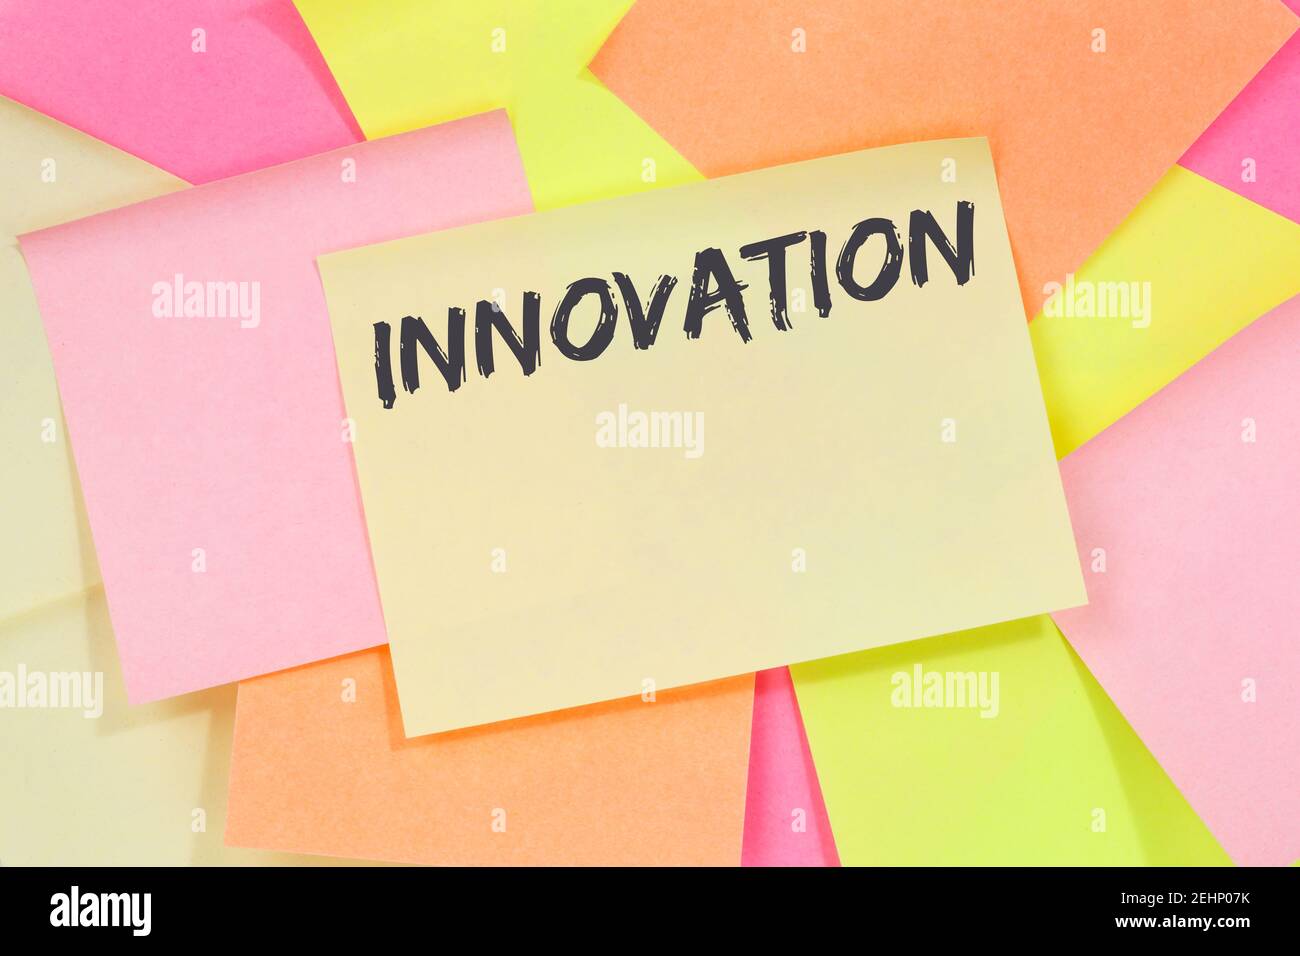 Innovation idée leadership succès gagnant concept d'entreprise innover créativité papier à lettres papier à lettres Banque D'Images